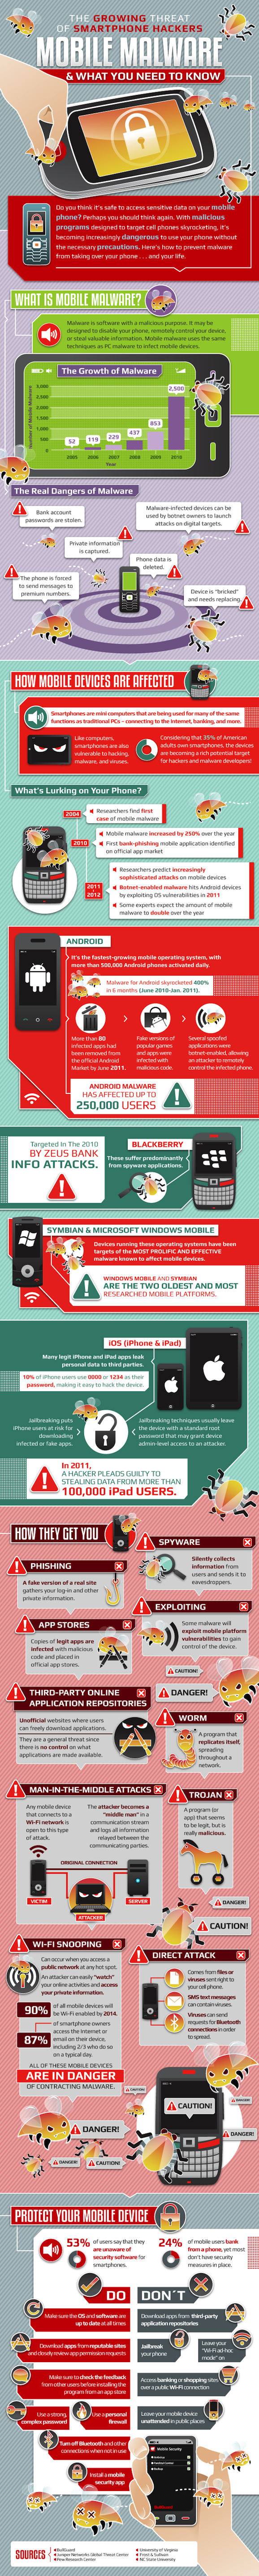 Mobile-Malware-Mashable-Infographic